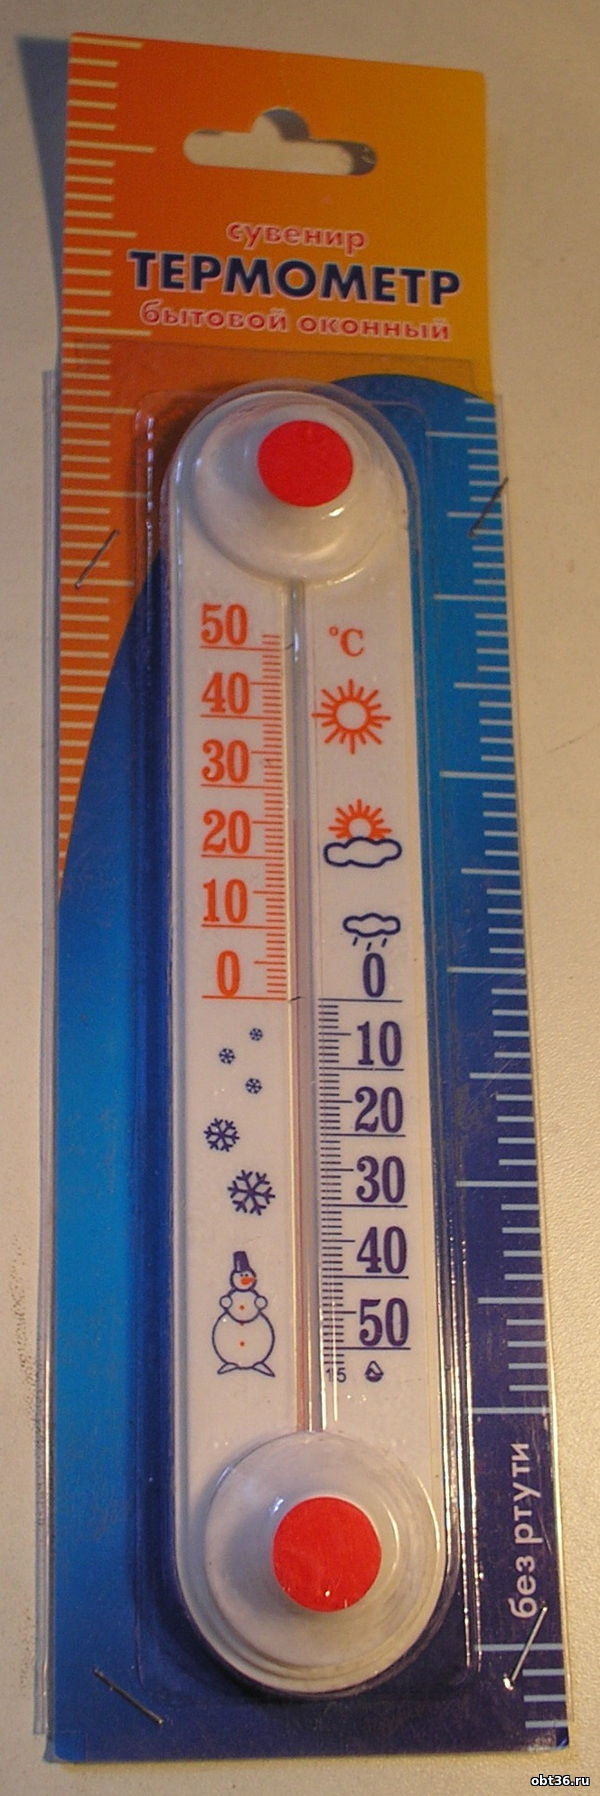 термометр тб-3-м1 исполнение 11 г.лохвица полтавская область